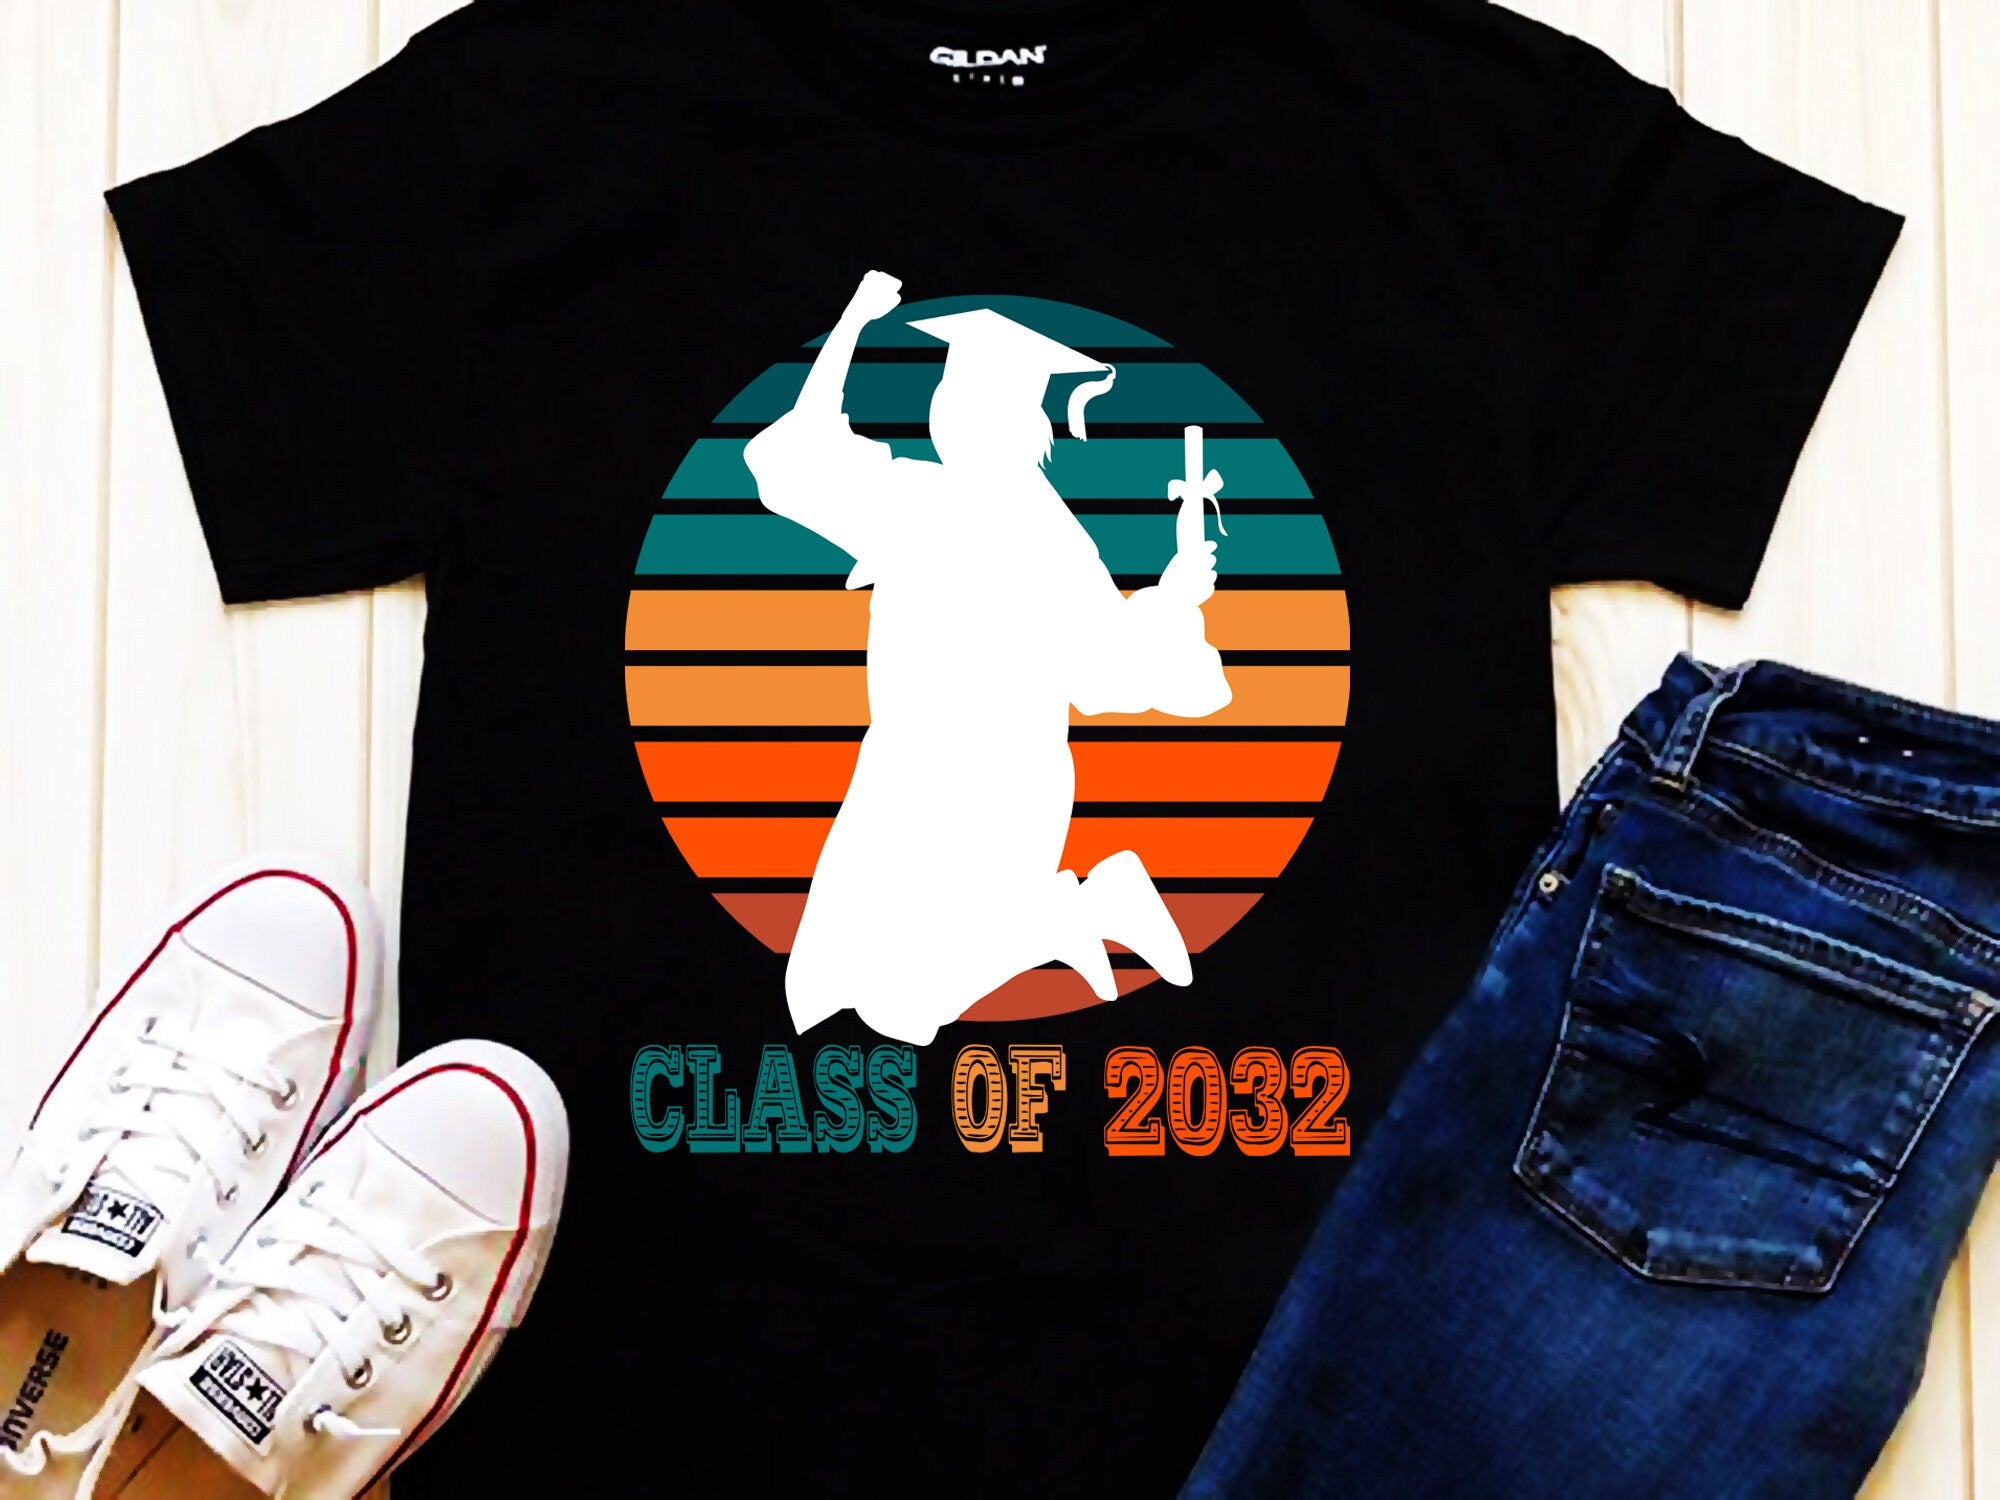 2032 की कक्षा | रेट्रो सनसेट टी-शर्ट, ग्रेजुएशन उपहार, रेट्रो सीनियर शर्ट, ग्रेजुएशन शर्ट, क्लास ऑफ़ 2032 शर्ट, सीनियर 2032 शर्ट - प्लसमिनस्को.कॉम